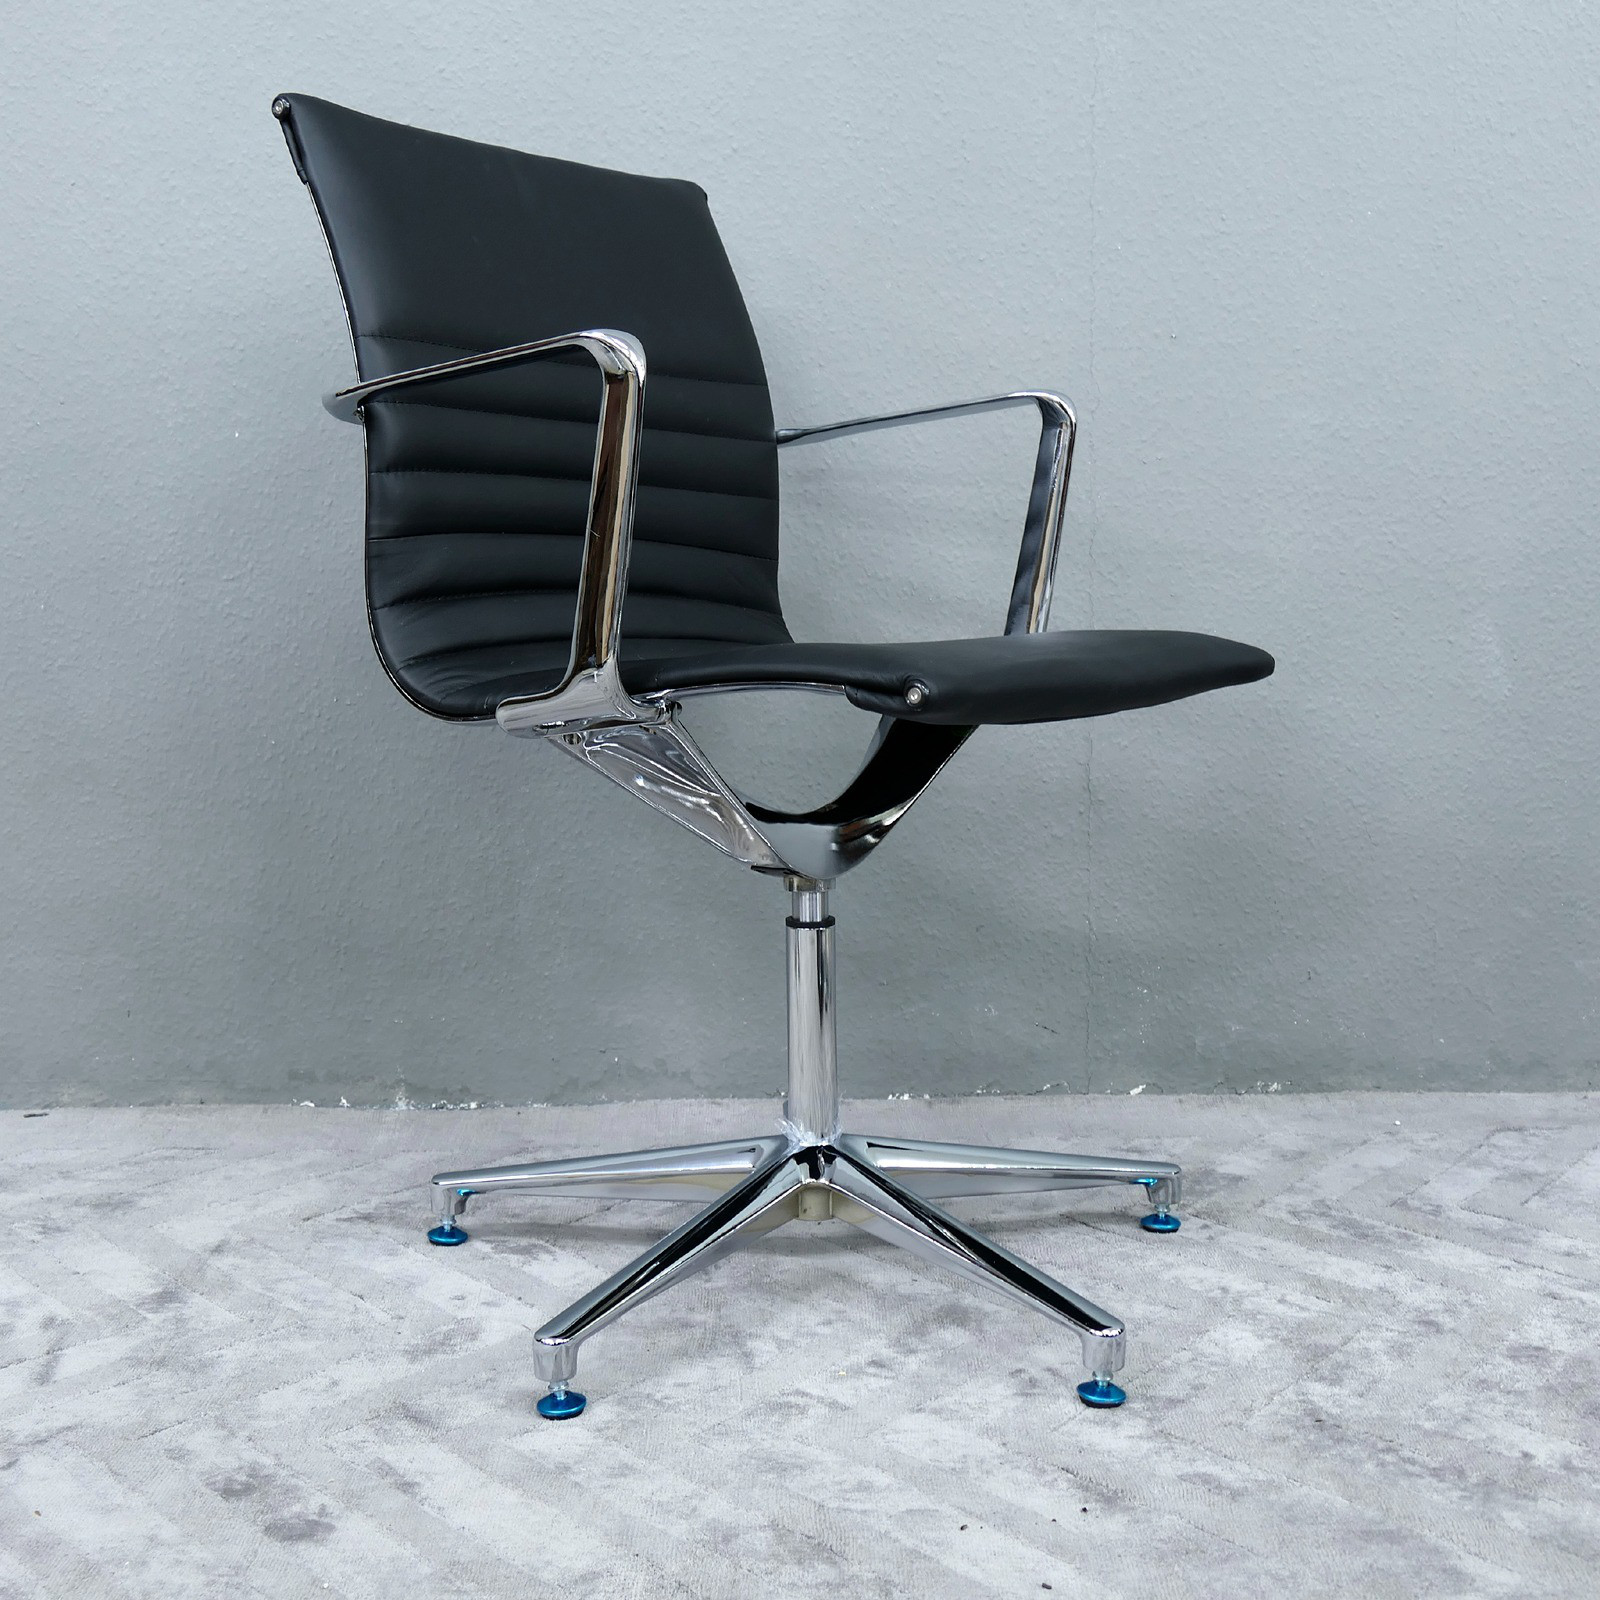 Konferenzstuhl Besucherstuhl Chef Bürostuhl Sessel Leder Farbe schwarz